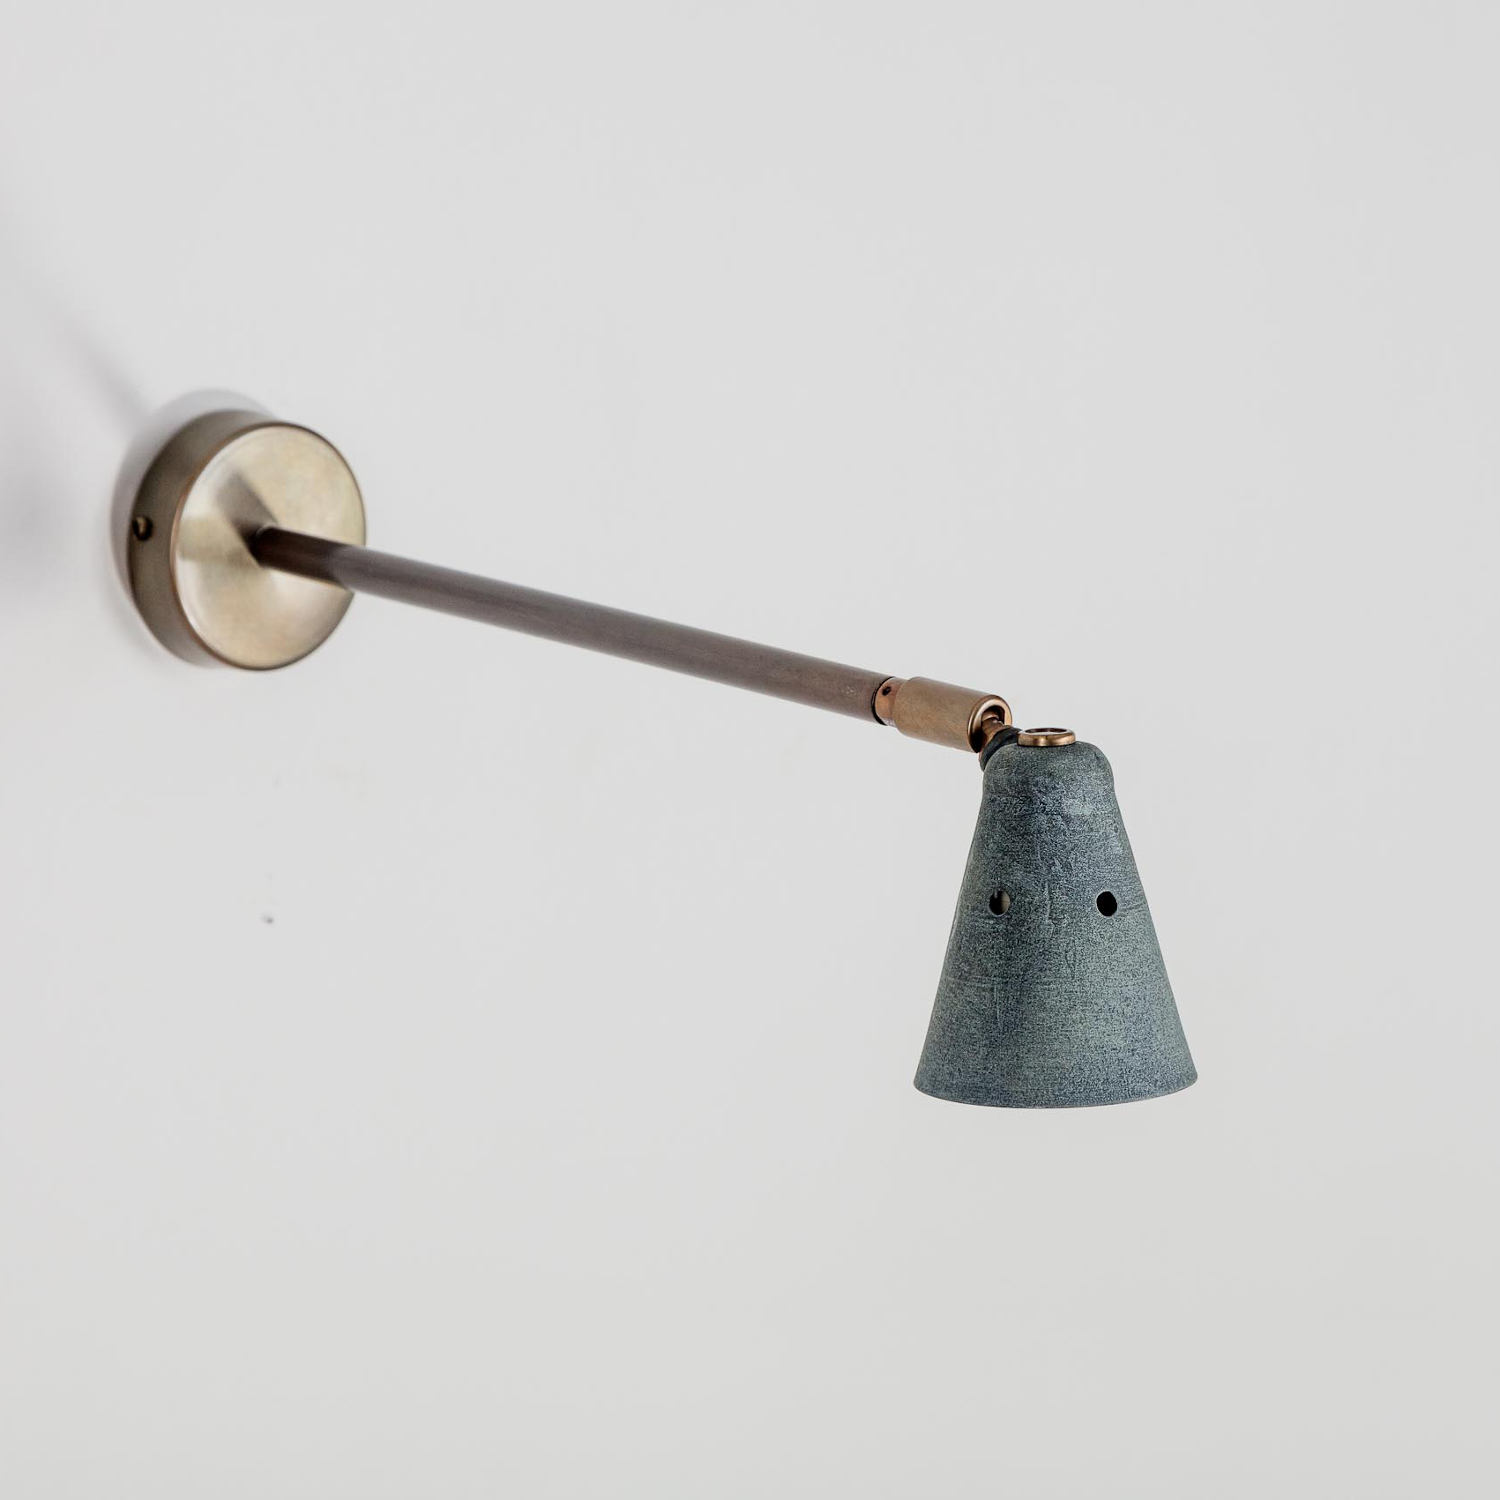 Handgefertigter Strahler mit 35 cm-Wandarm ROTISSE: Schirm in Alt-Zink mit Wandarm in Messing geätzt